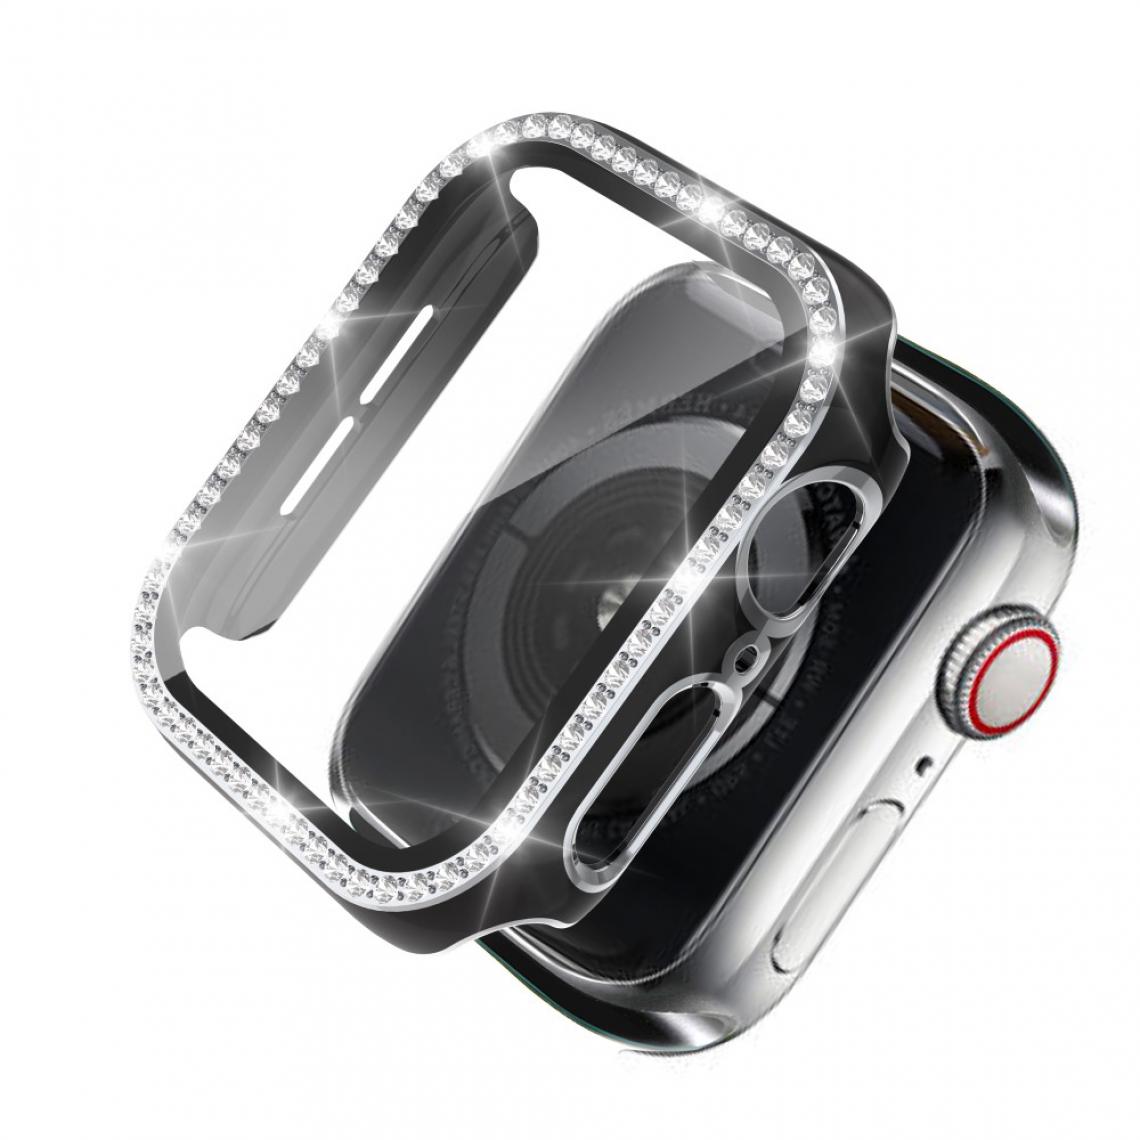 Other - Coque en TPU Strass en cristal de galvanoplastie bicolore noir/argent pour votre Apple Watch 1/2/3 42mm - Accessoires bracelet connecté